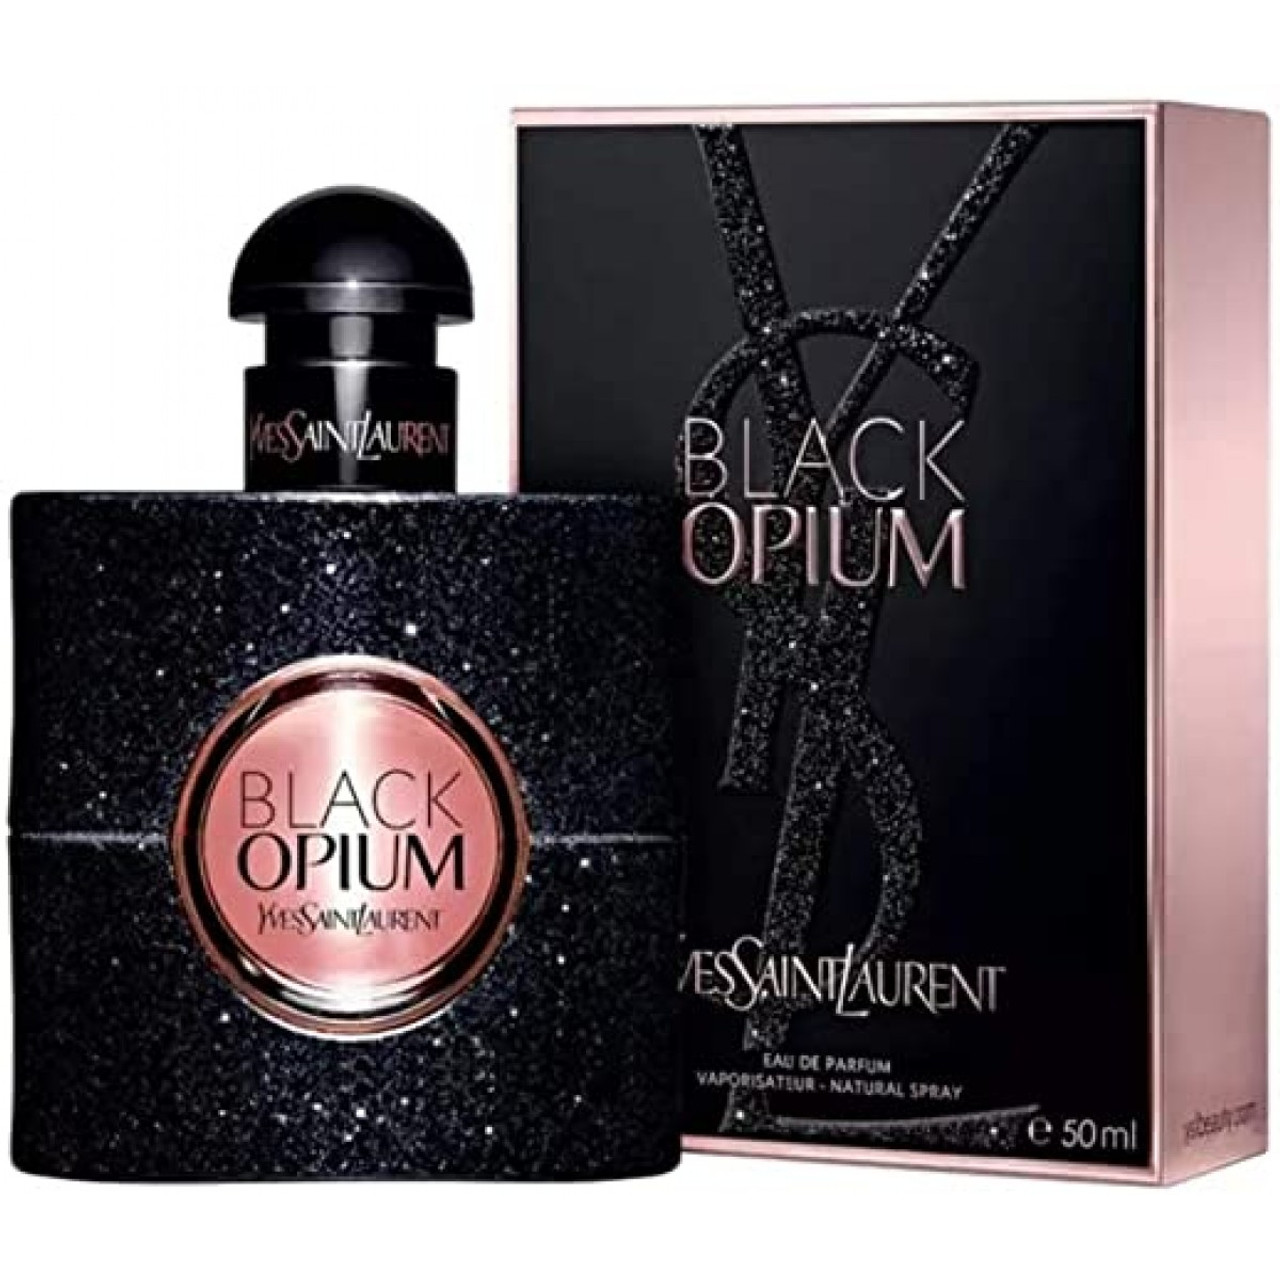 YSL Black Opium EDP 15ml original, Beauty & Personal Care